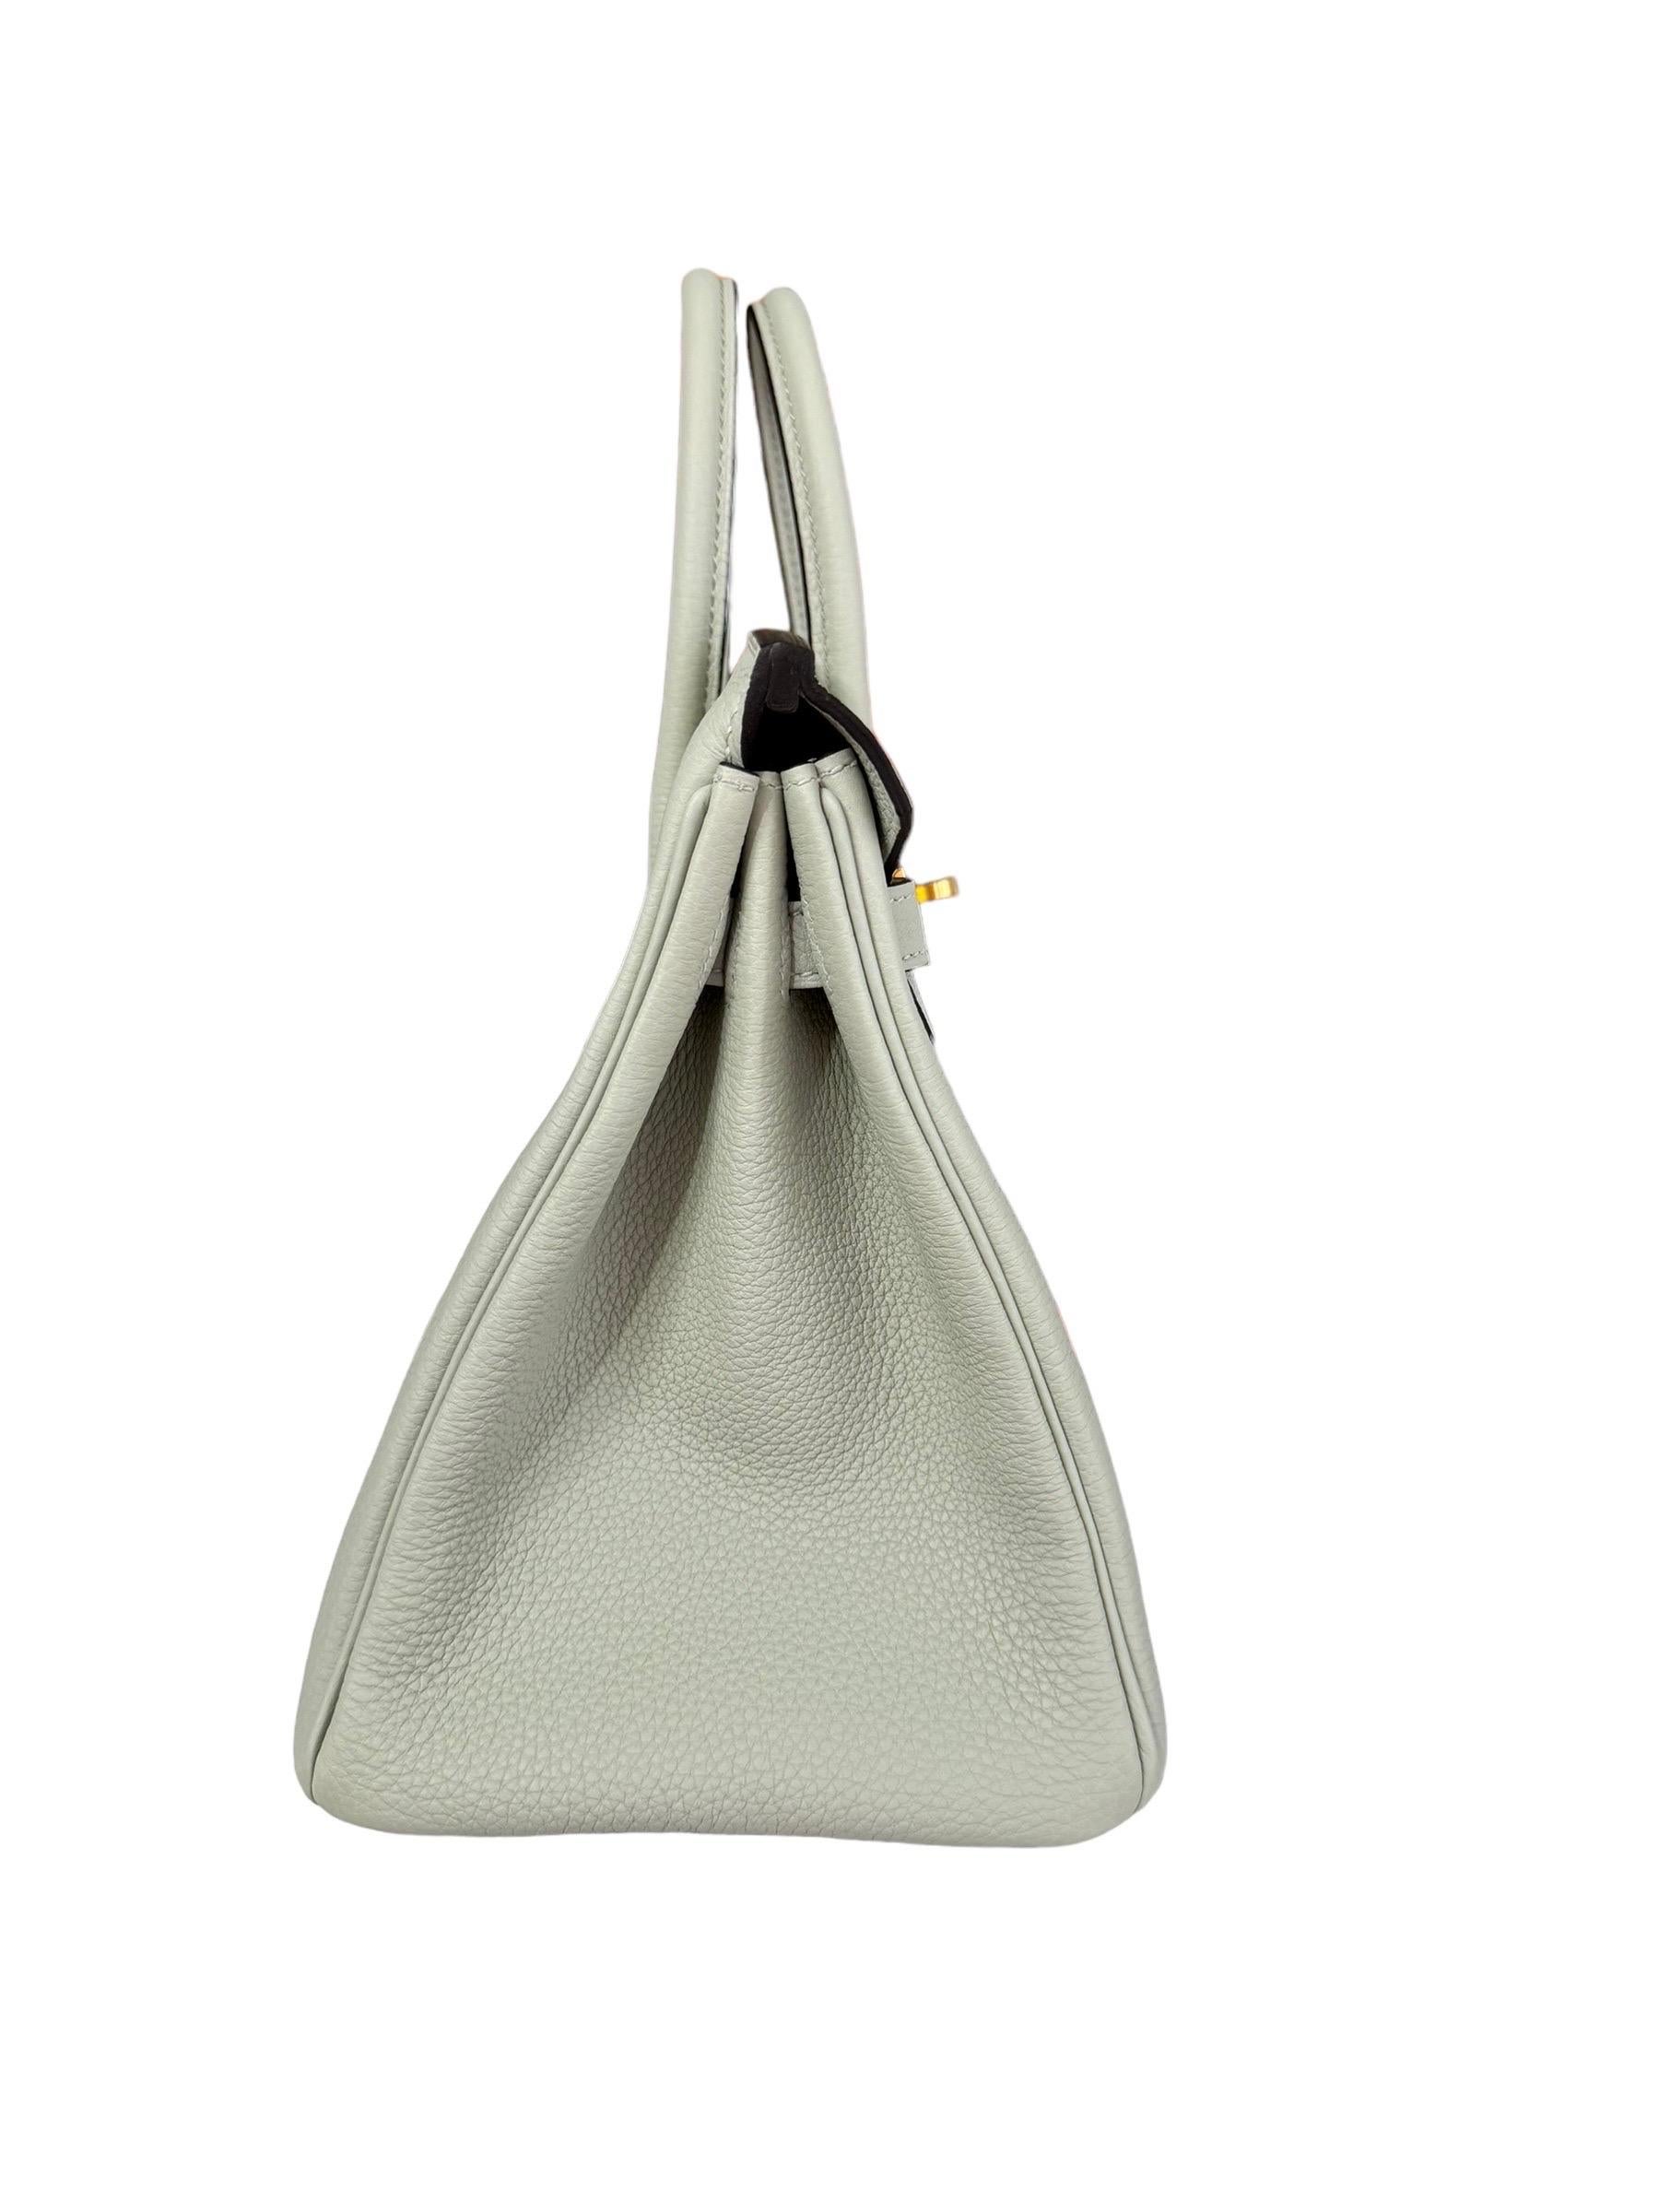 Hermes Birkin 25 Gris Neve Gray Togo Leather Handbag Gold Hardware NEW 2023 For Sale 2